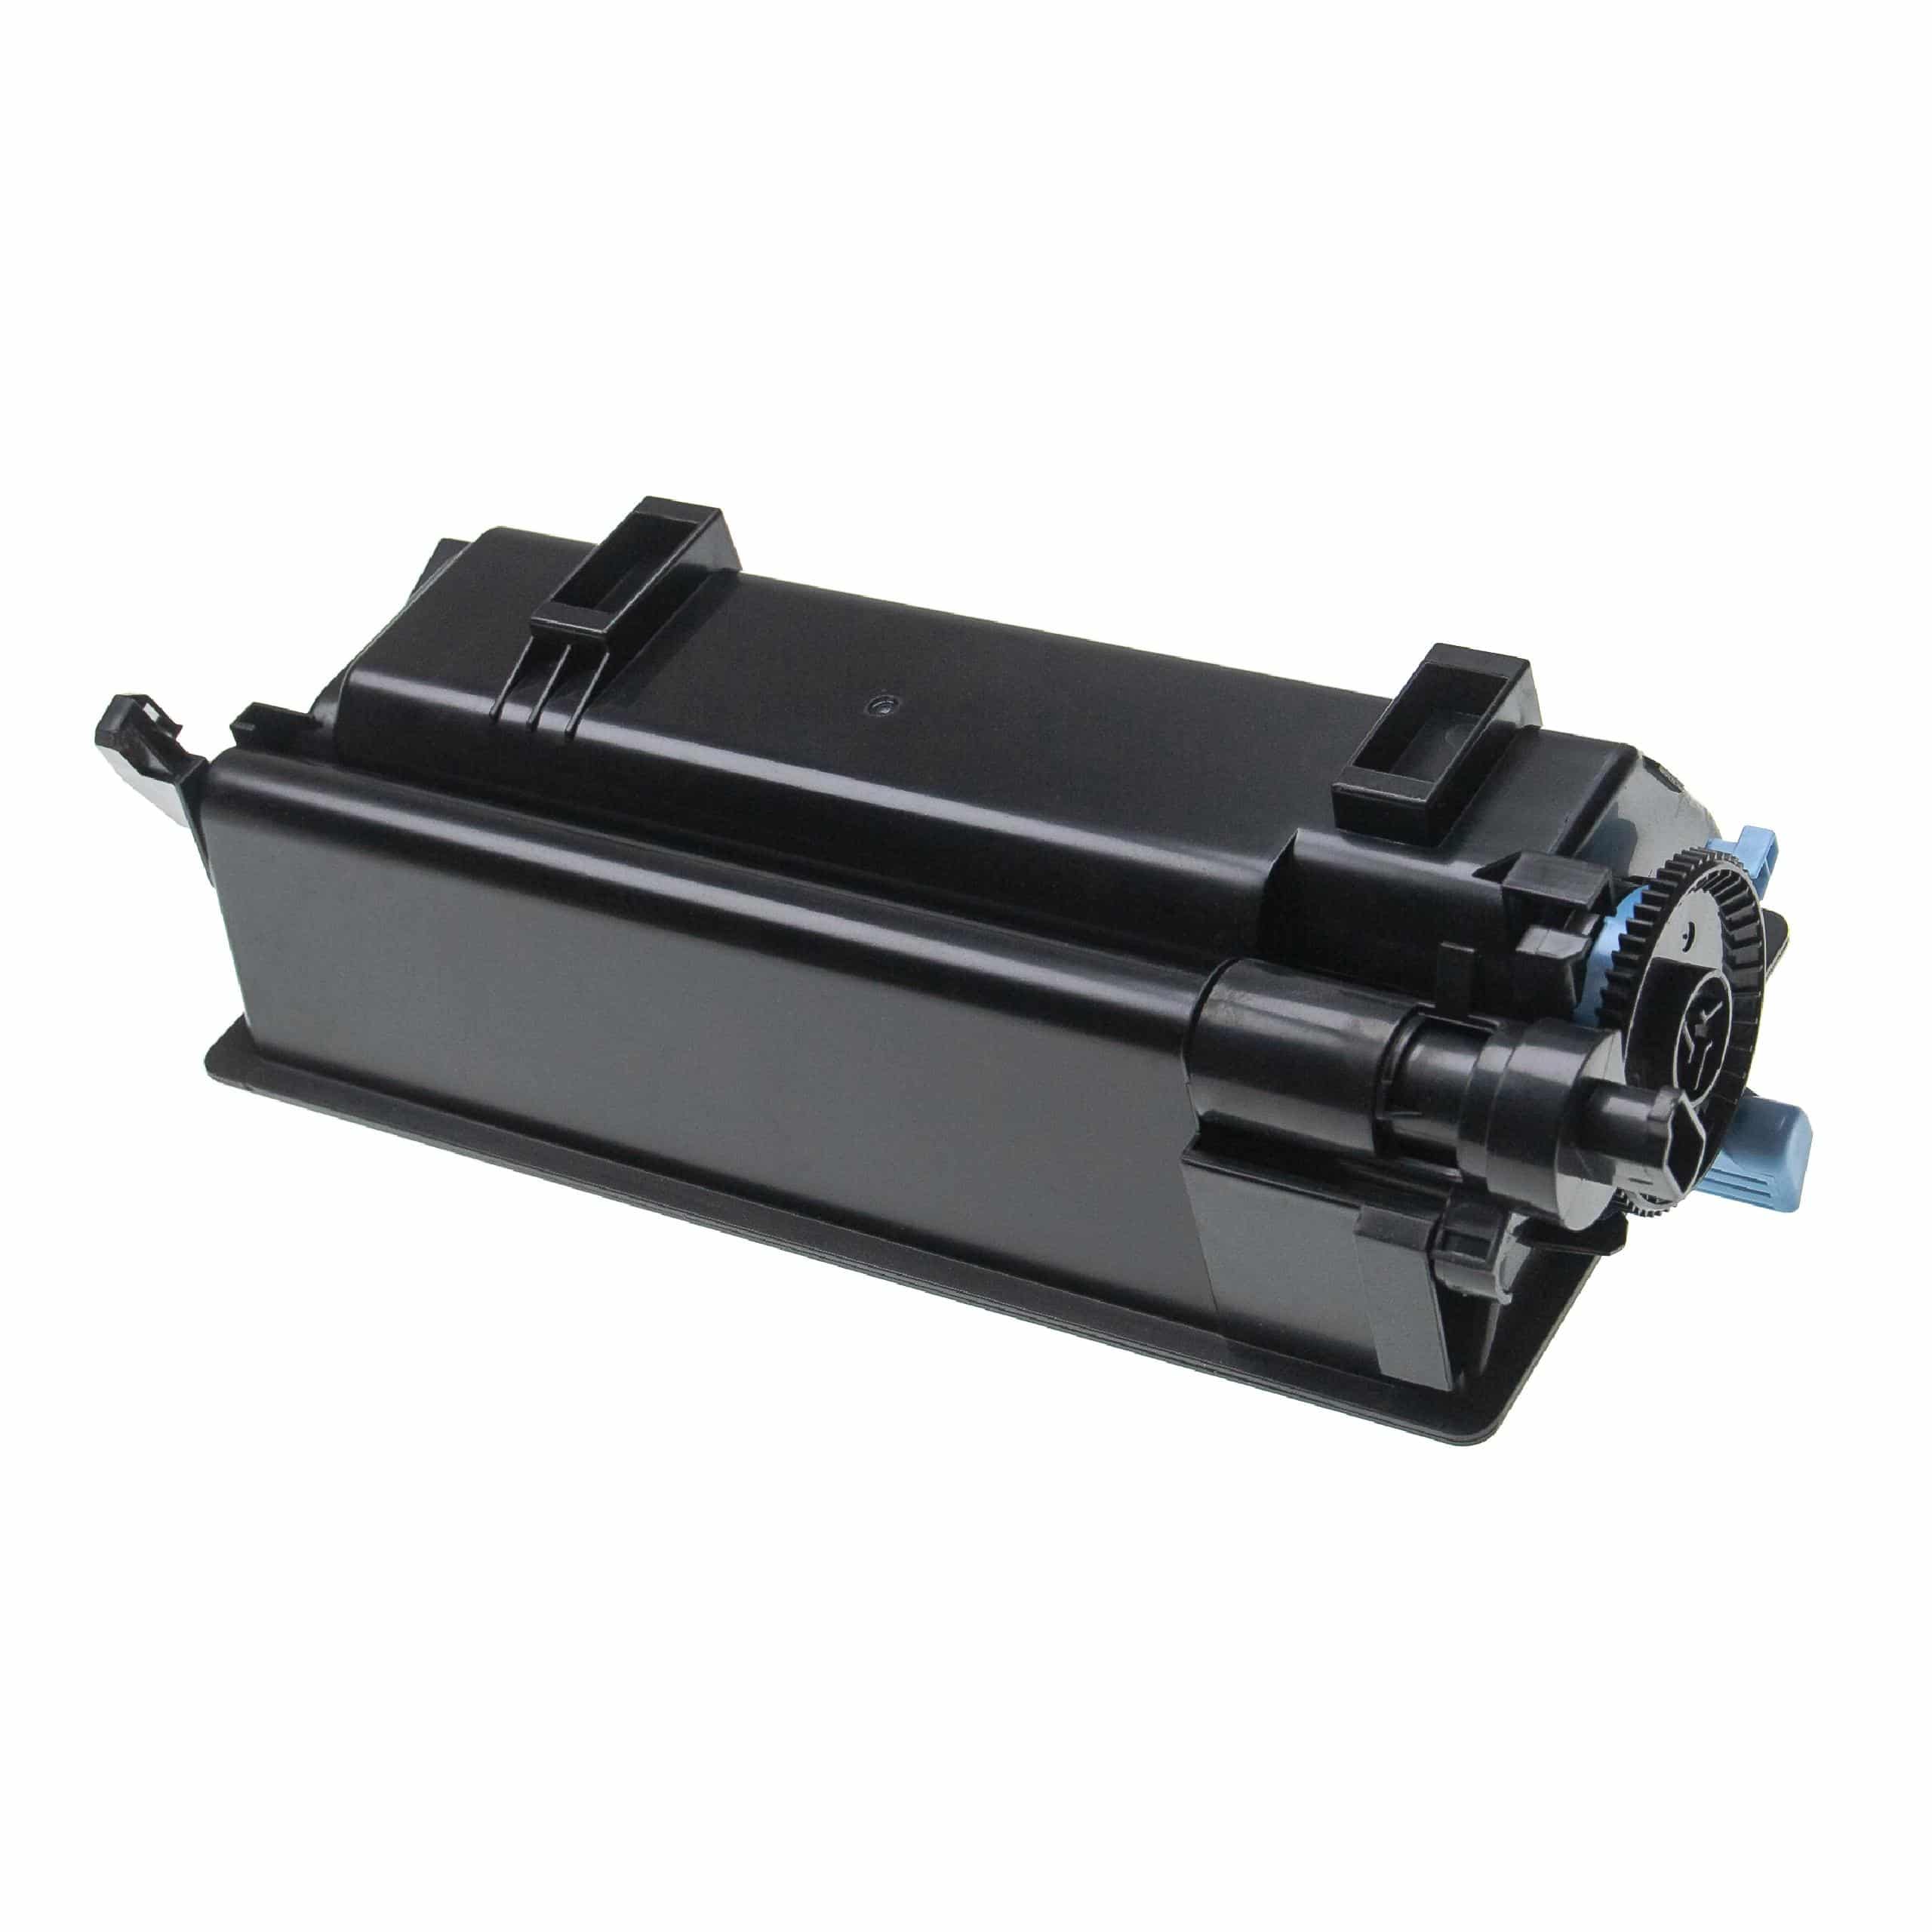 Cartouche de toner remplace Kyocera TK-3160 pour imprimante laser Kyocera + récupérateur, noir